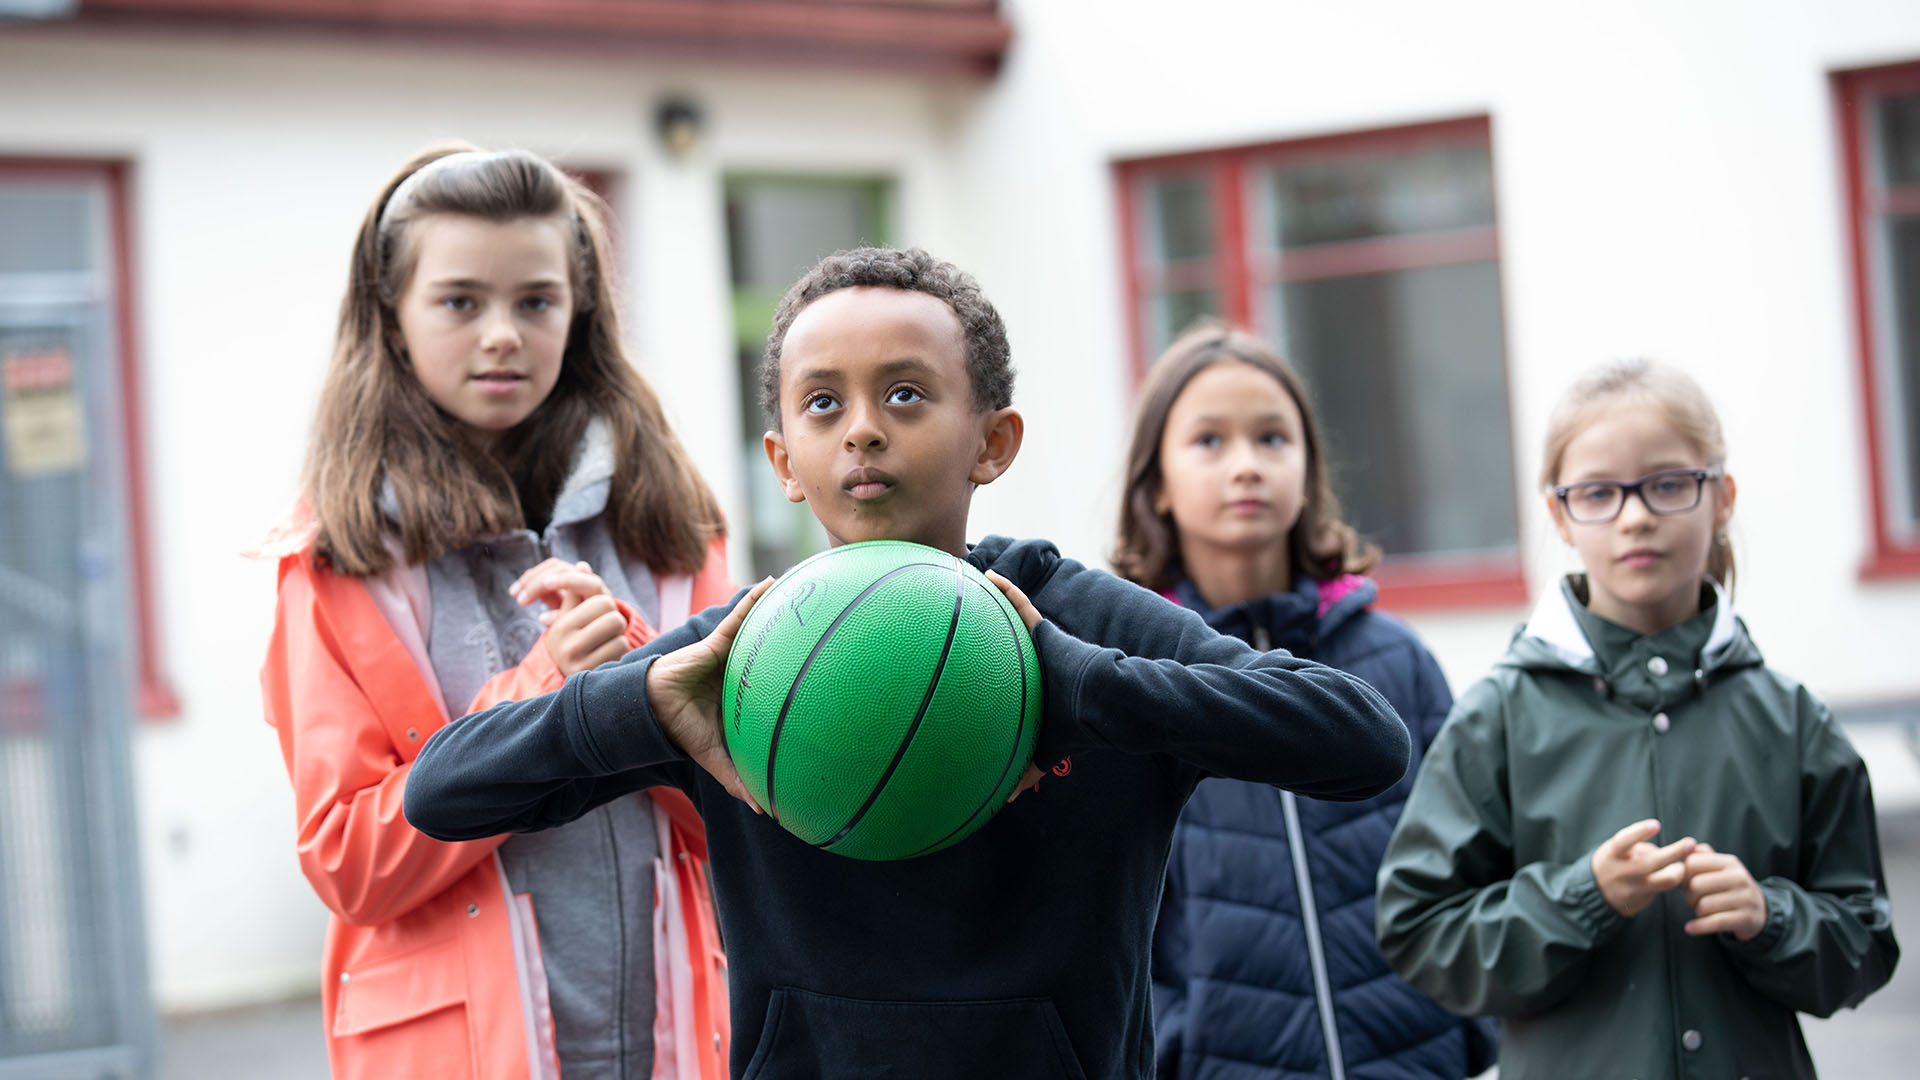 Pojke i centrum som fokuserar på kasta sin gröna basketboll, bakom honom är tre barn som tittar på